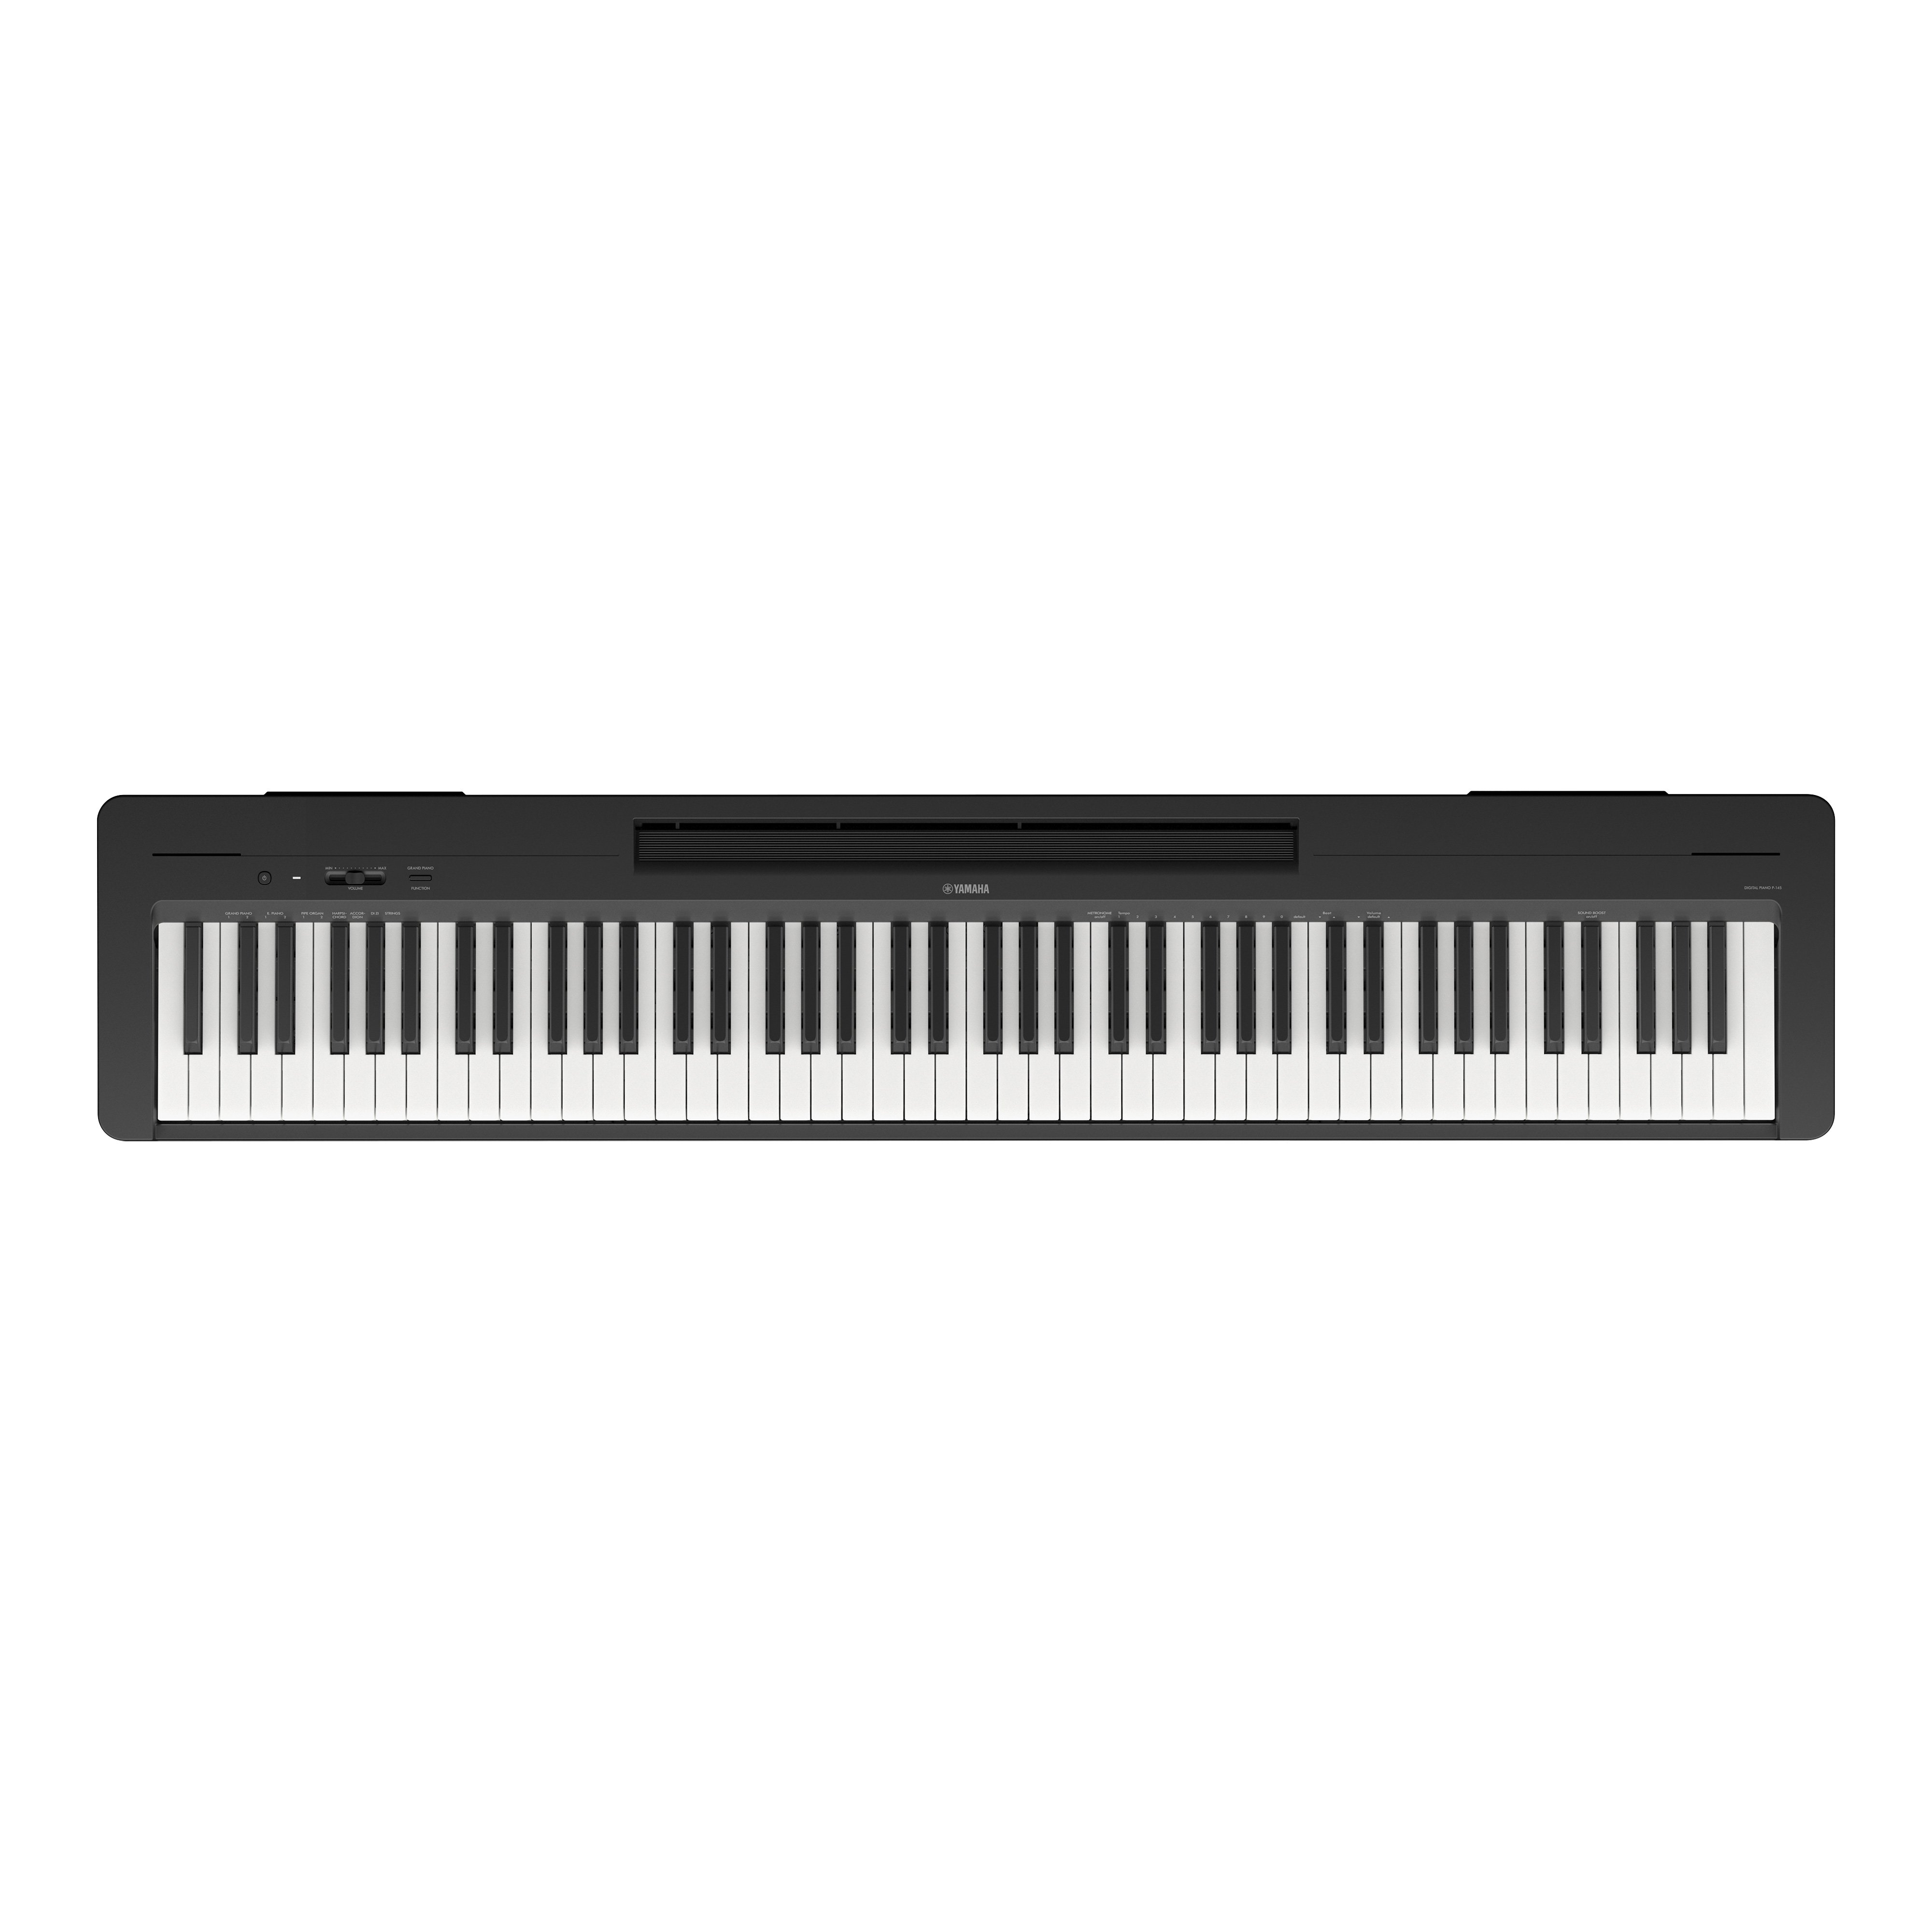 P-145 - Présentation - SERIE P - Pianos - Instruments de musique - Produits  - Yamaha - France